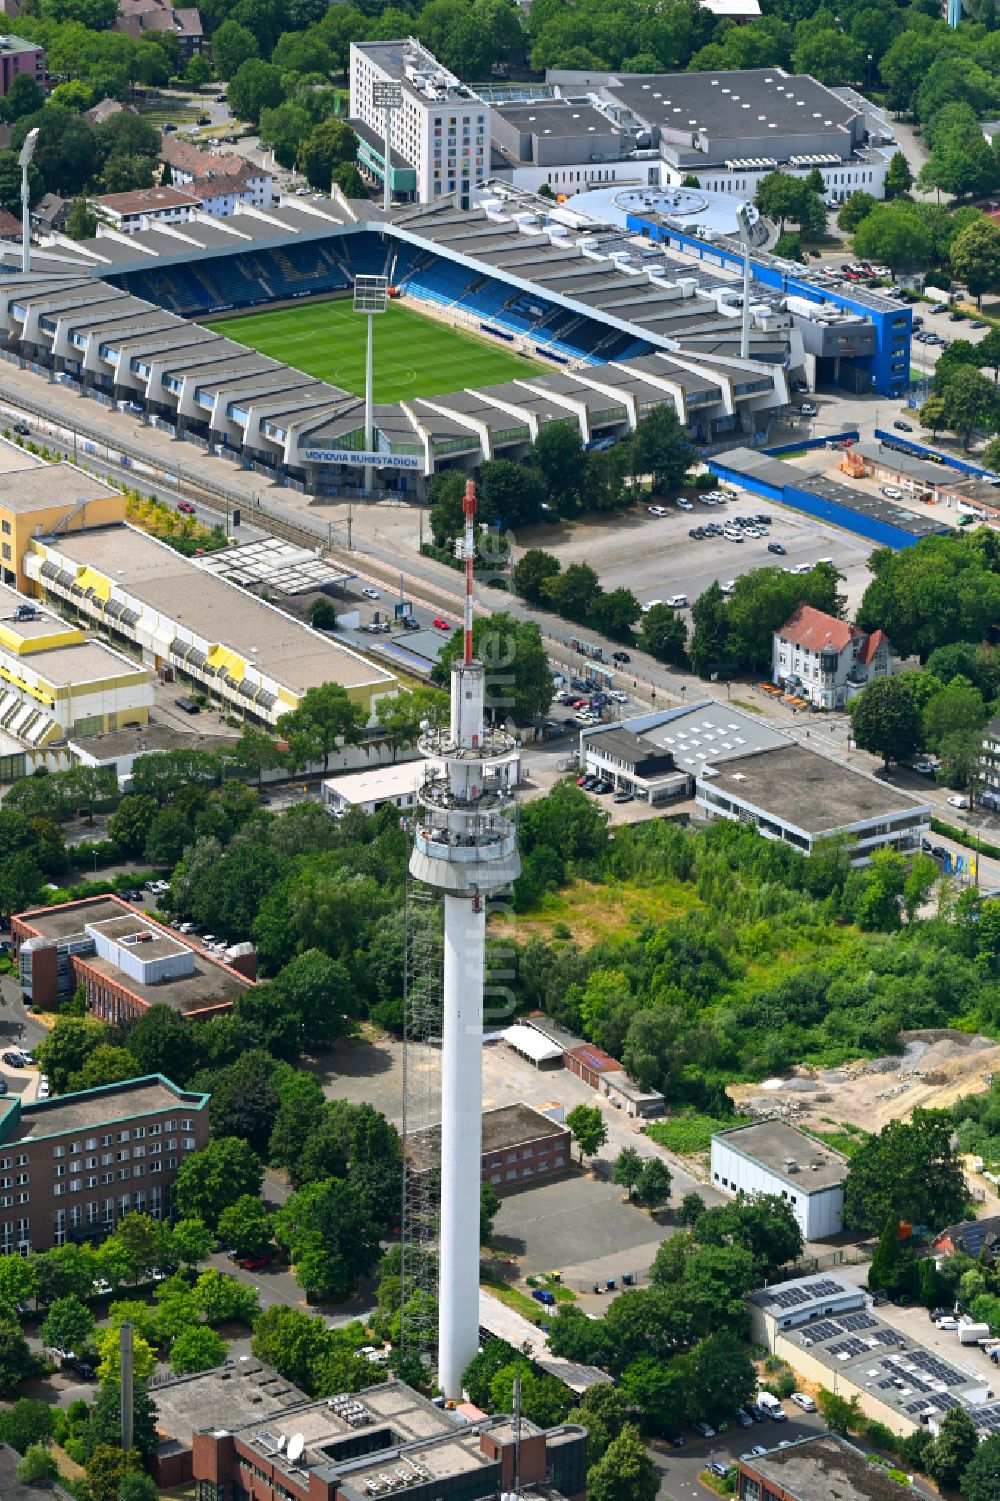 Luftbild Bochum - Fernmeldeturm und Grundnetzsender in Bochum im Bundesland Nordrhein-Westfalen, Deutschland